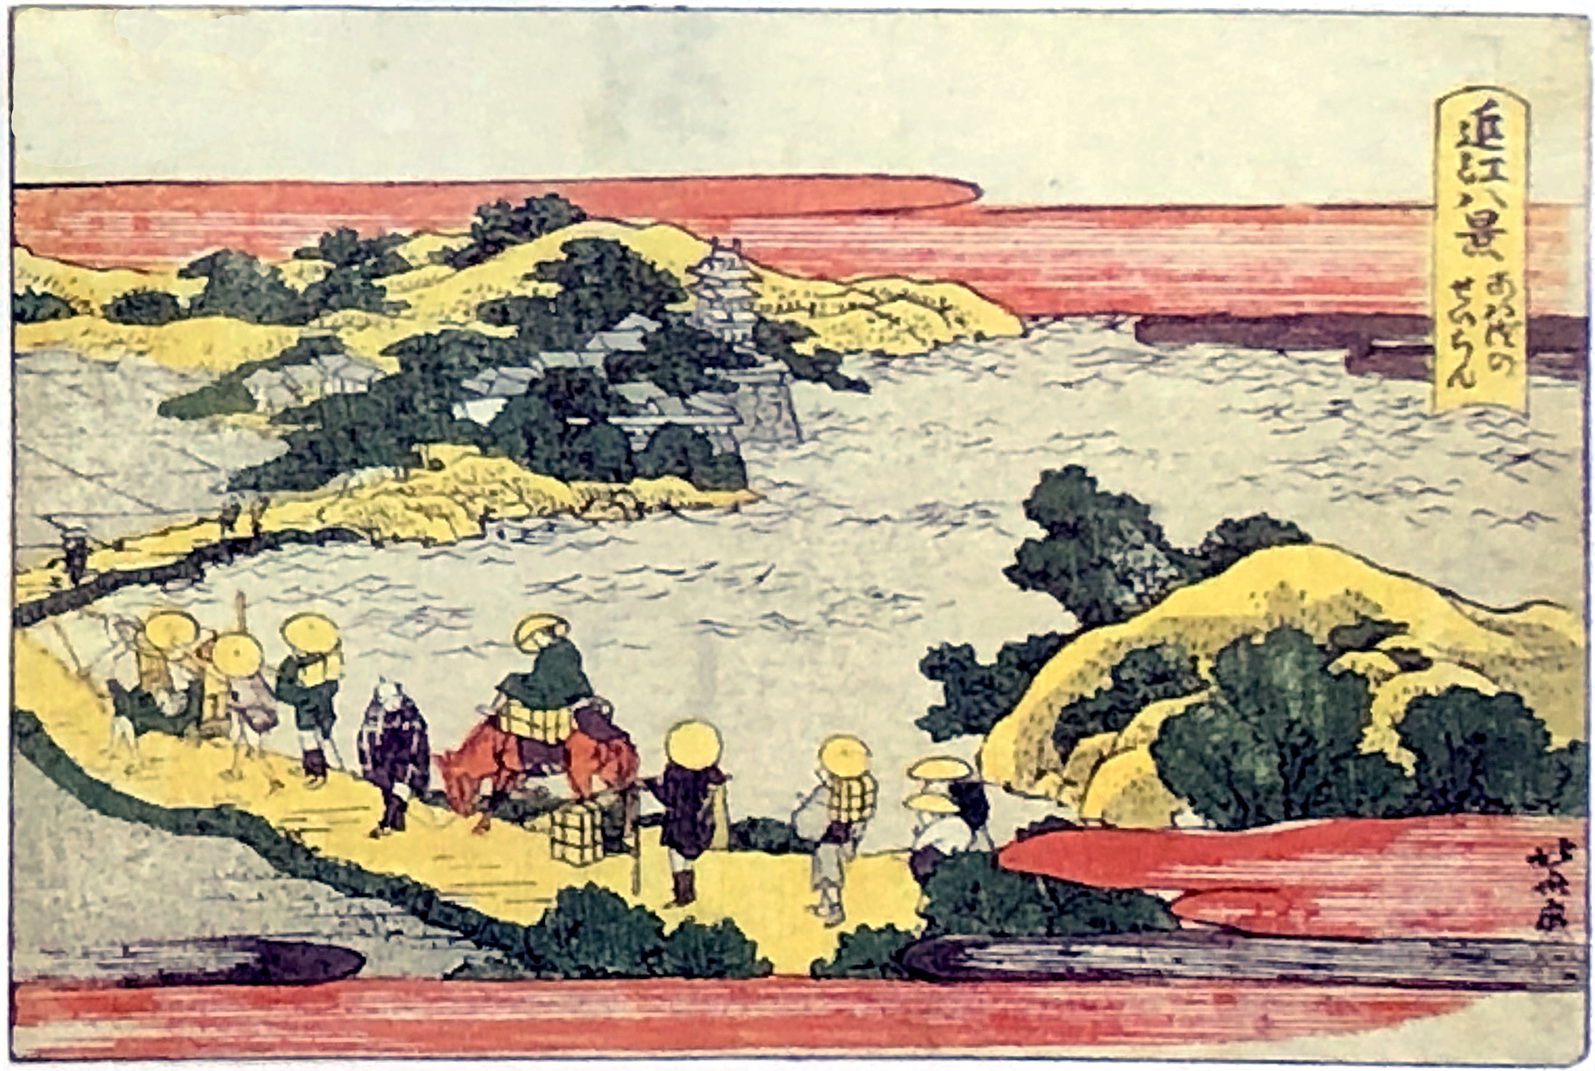 Hokusai - Heazy Morning Sunlight at Awazu - 1802 Horizontal Edition